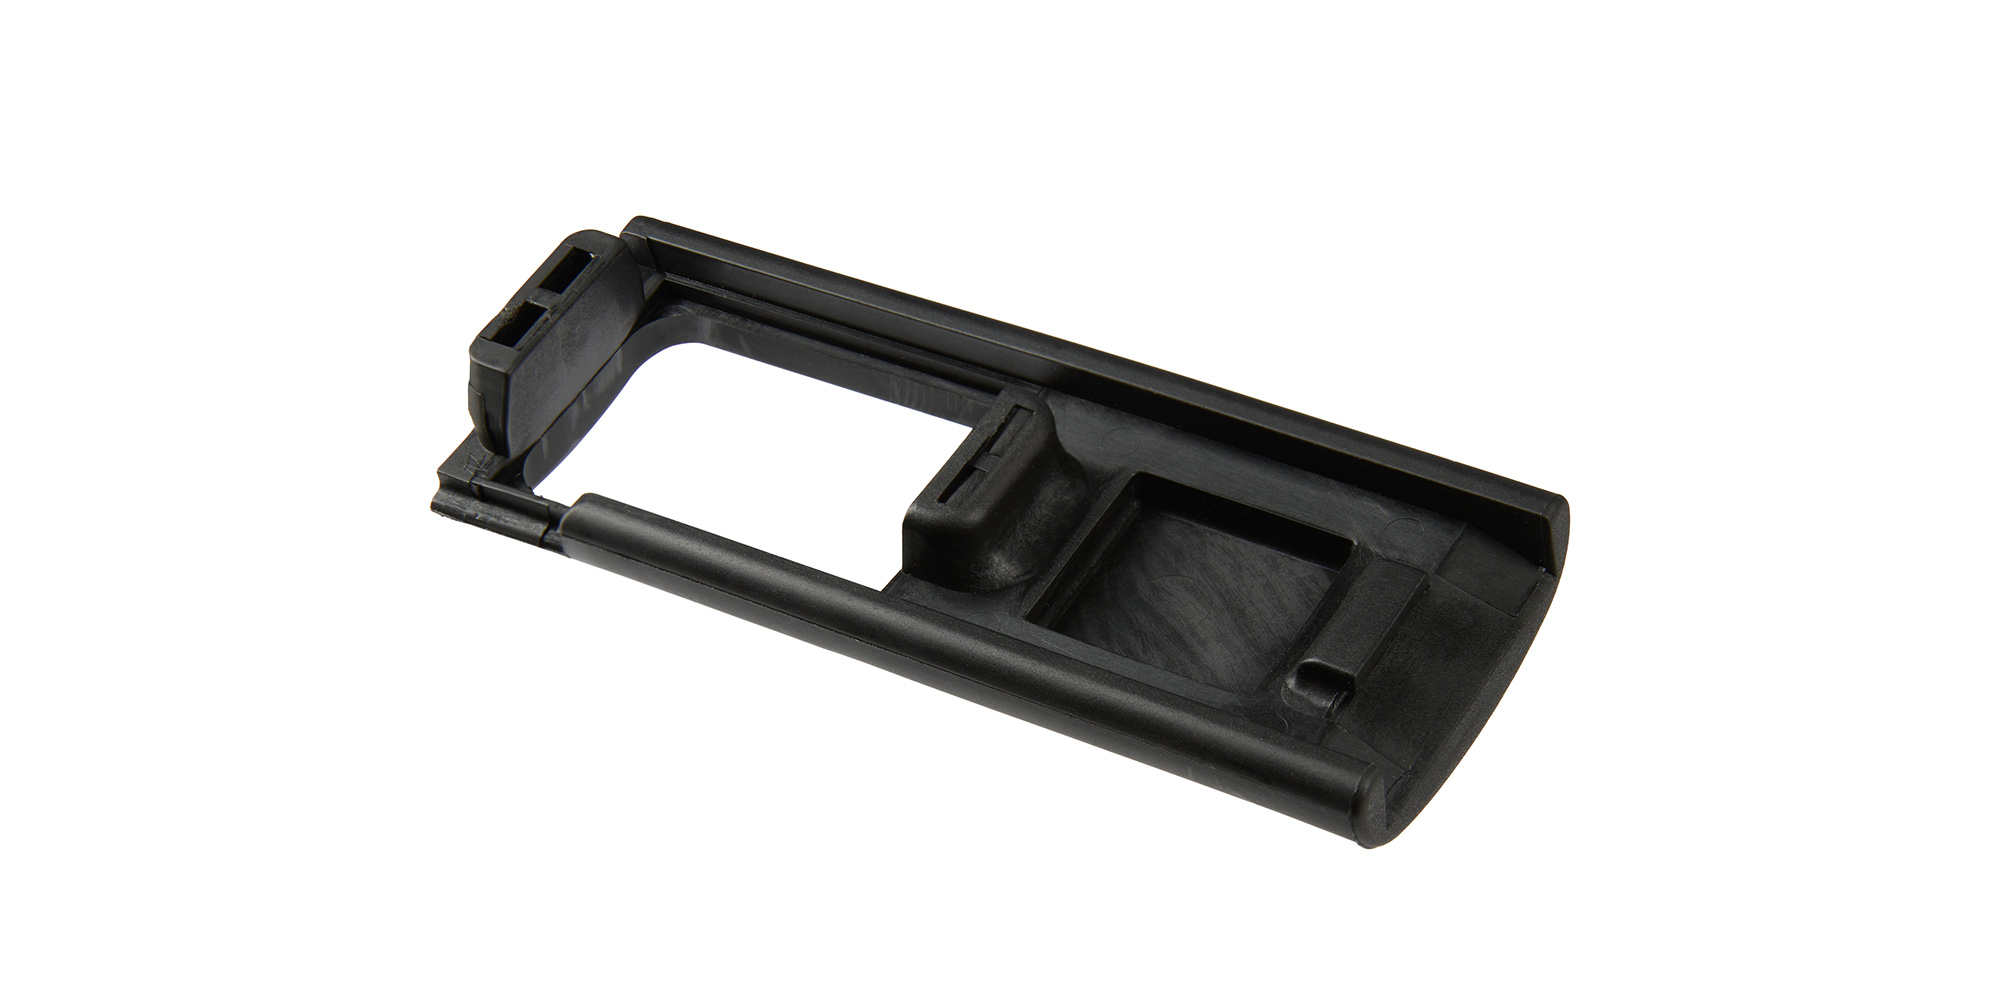 Interfață pentru utilizarea de încarcatoare compatibile Glock 17/19 si Beretta 92 pe armele Nova Modul în calibrul 9×19